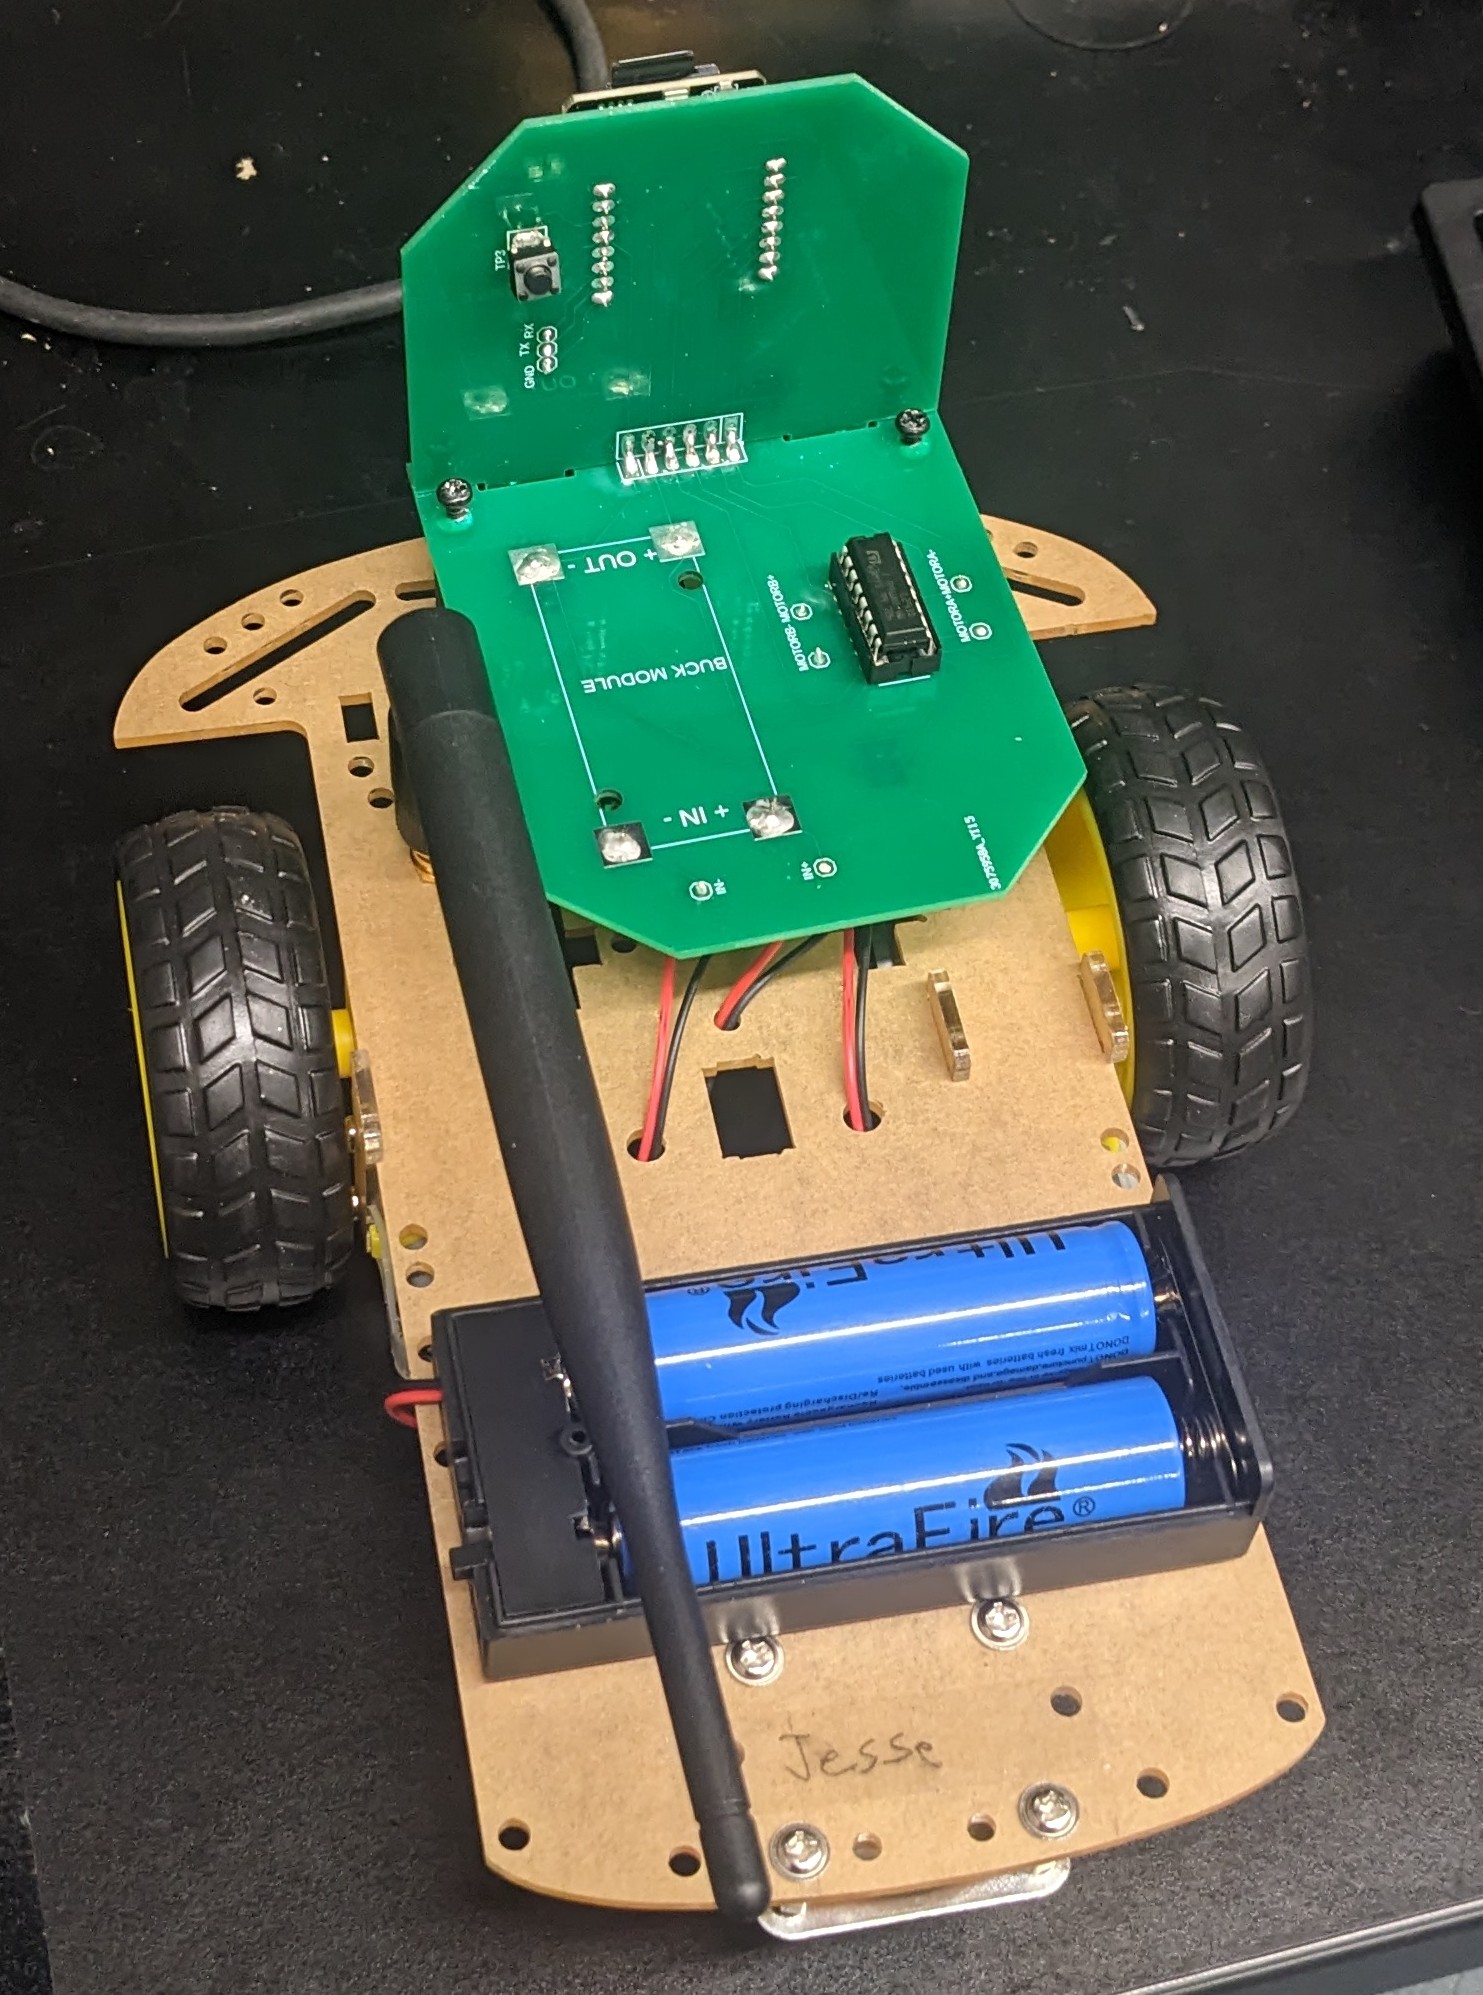 Robot Car image 2